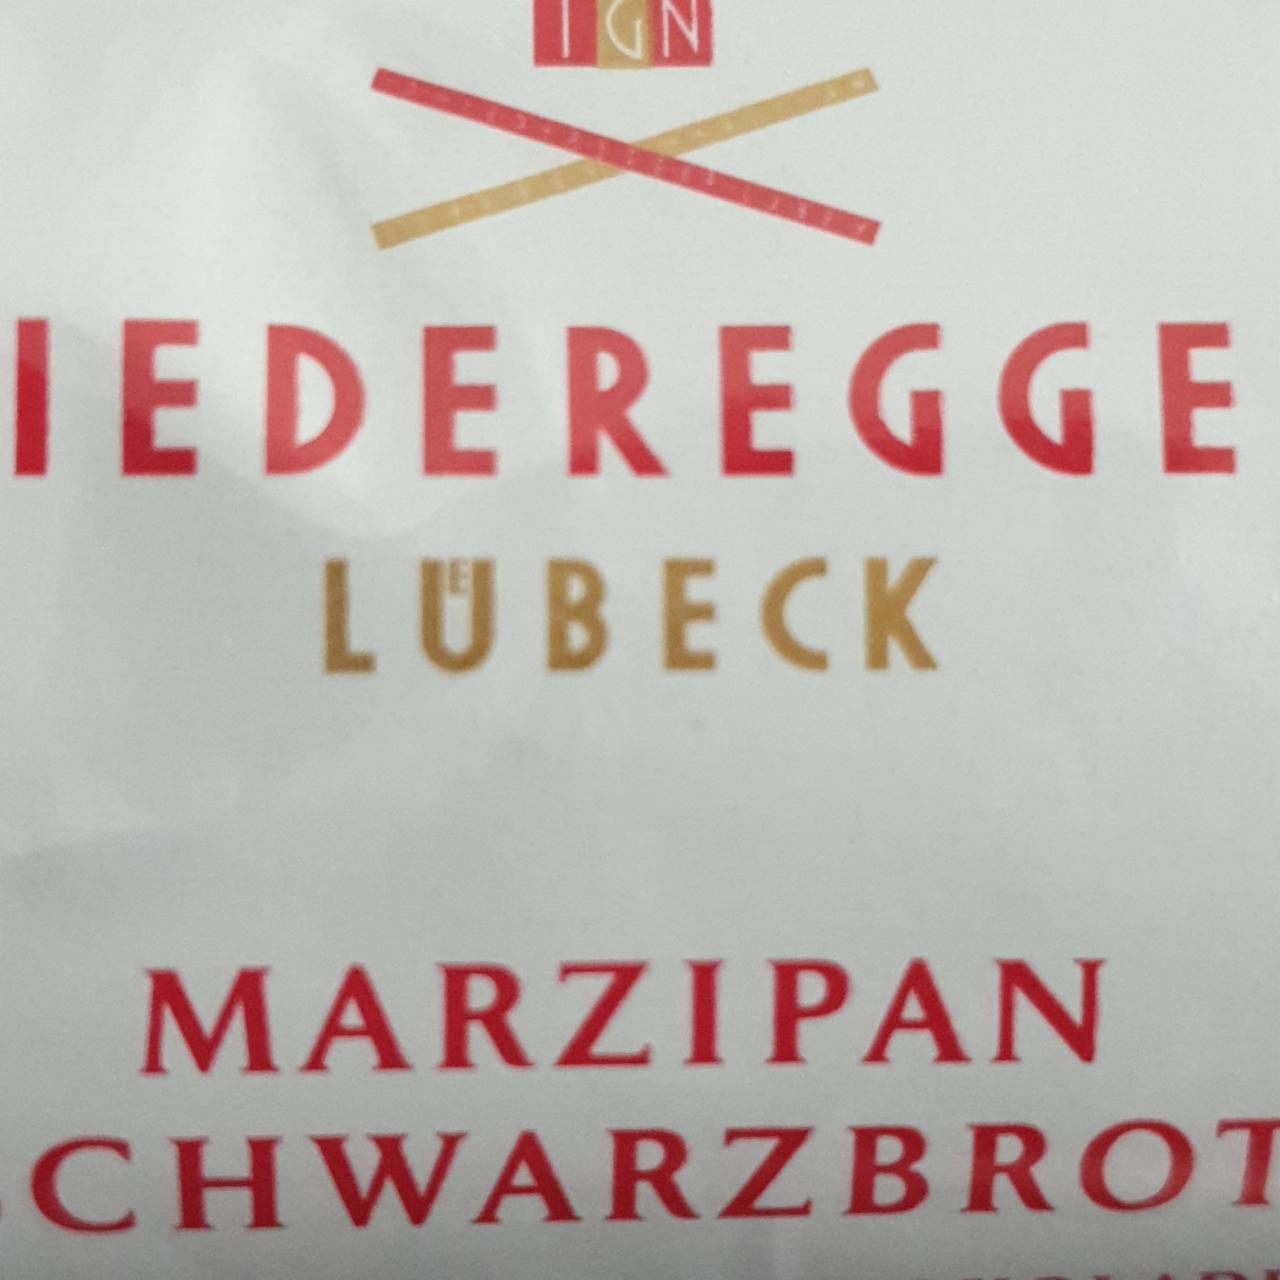 Фото - марципановий батончик у чорному шоколаді Lübeck Marzipan Schwarzbrot Niederegger